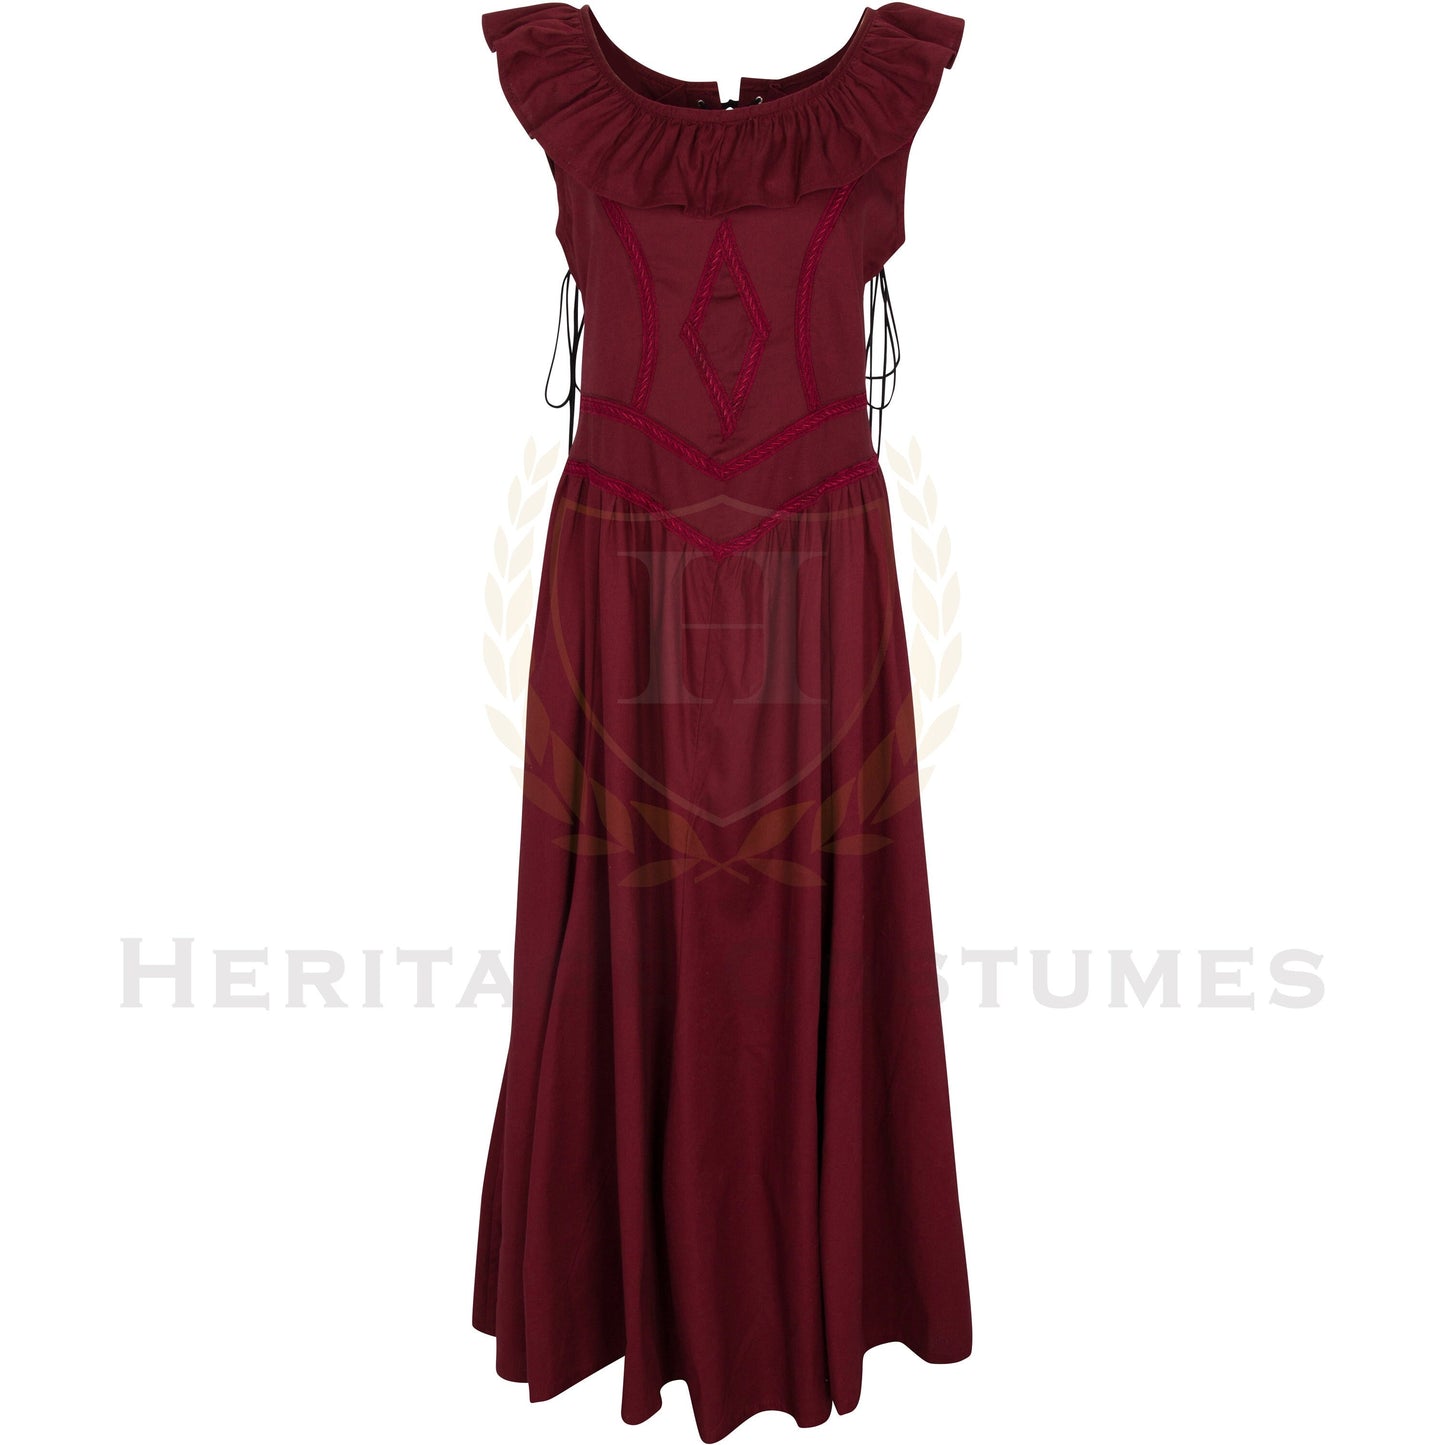 Medieval Cotton Lace up Renaissance Dress